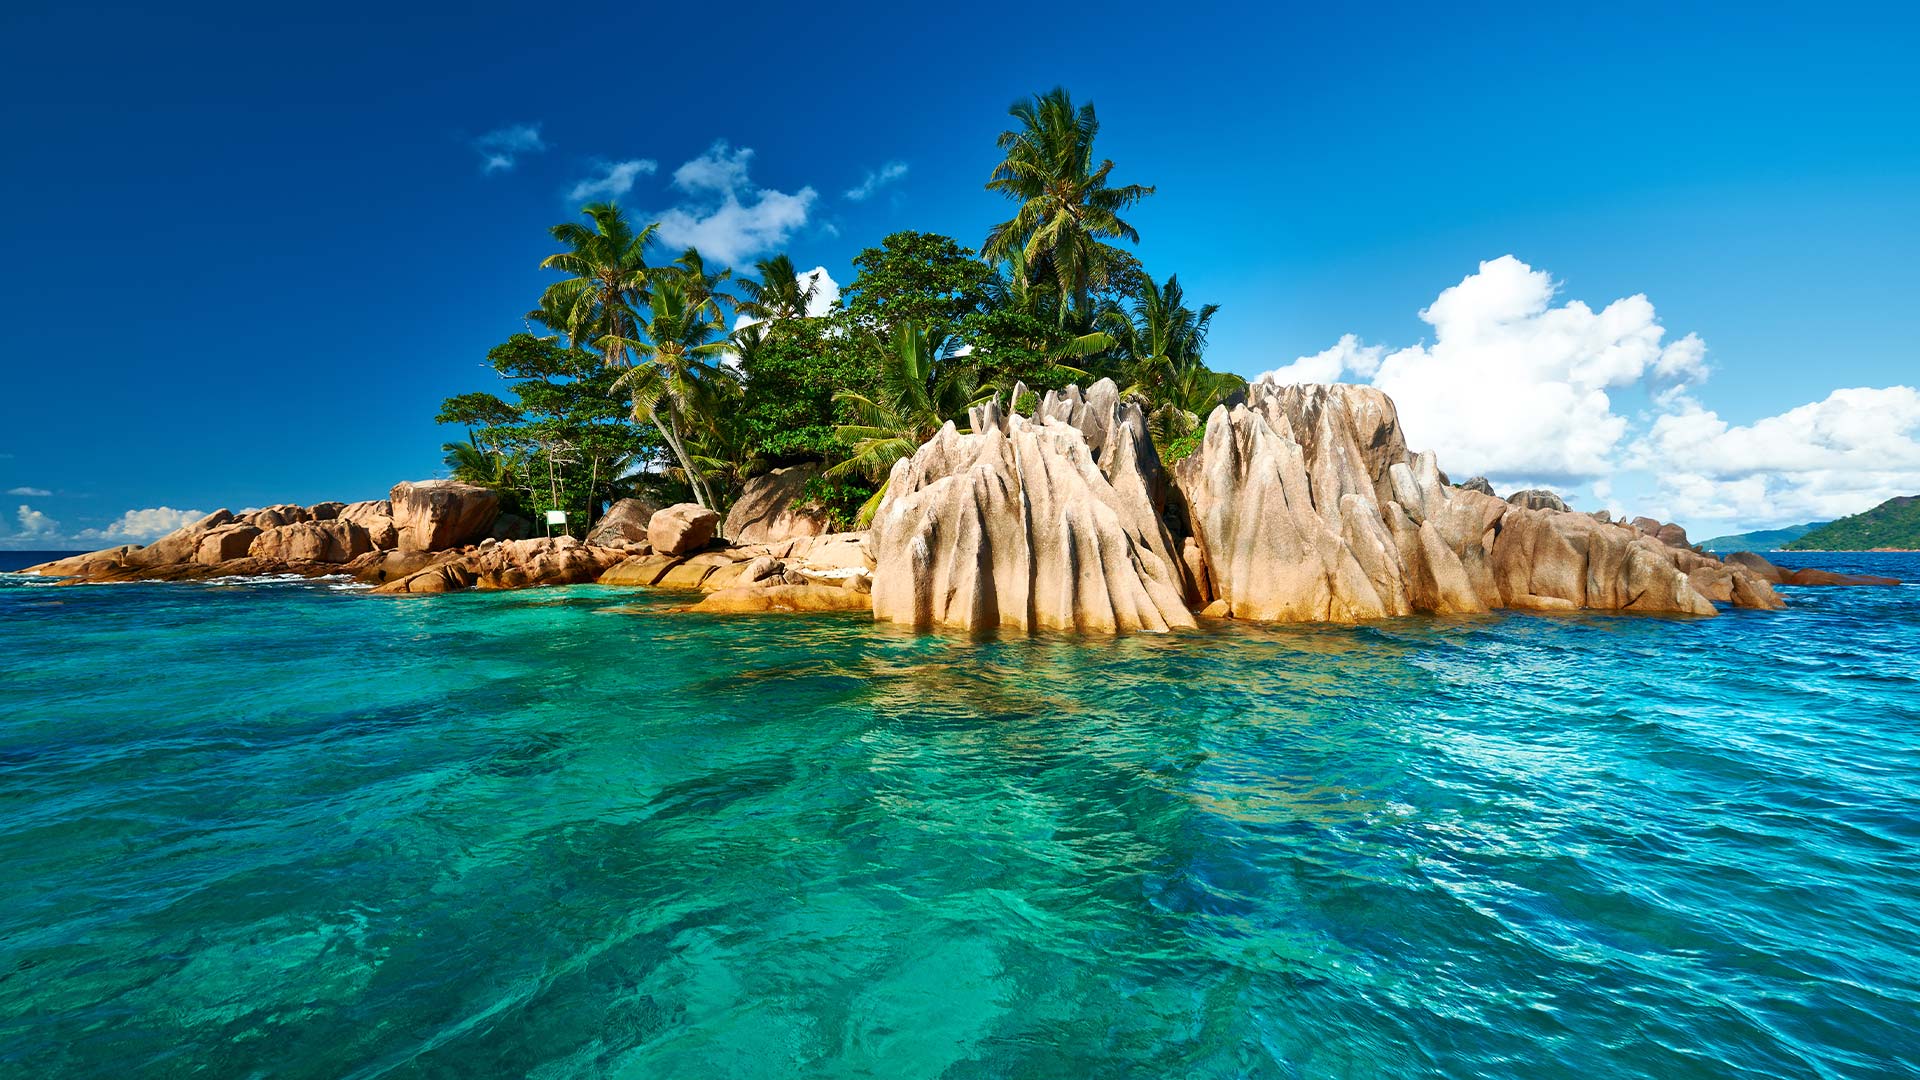 Partir au Seychelles de Nantes pour un voyage sur mesure avec Calliope travel